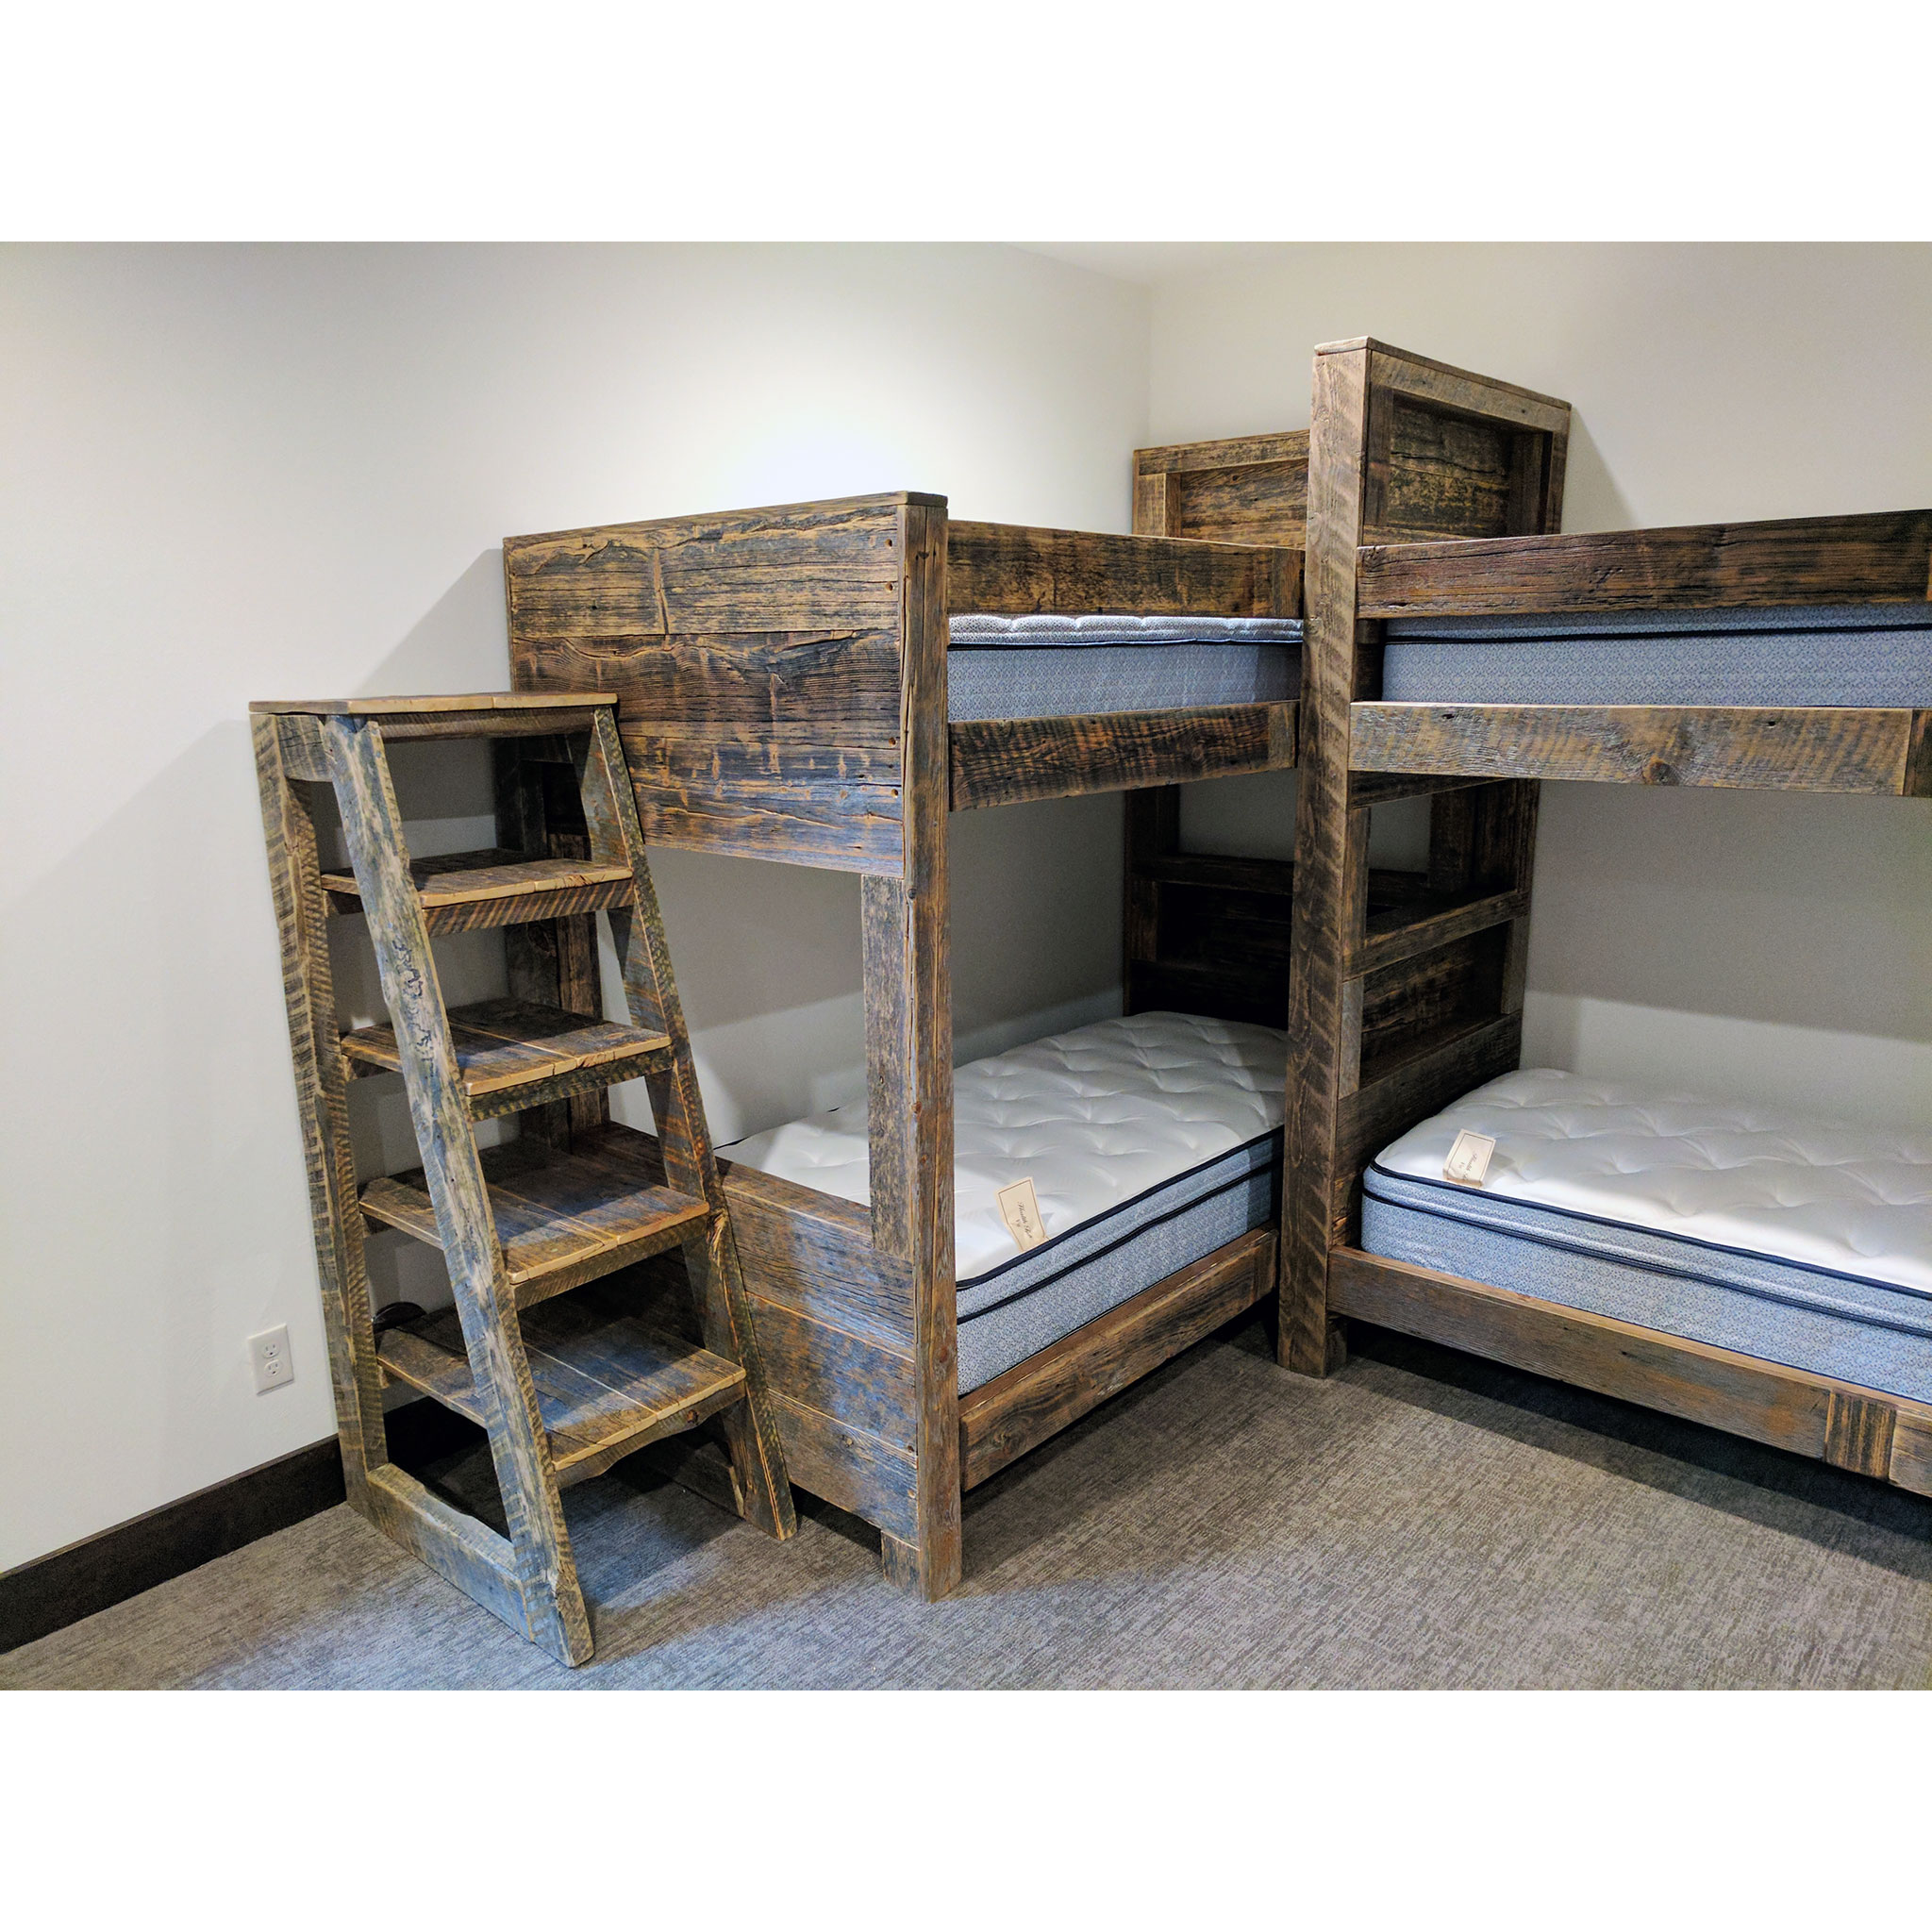 built in corner bunk beds